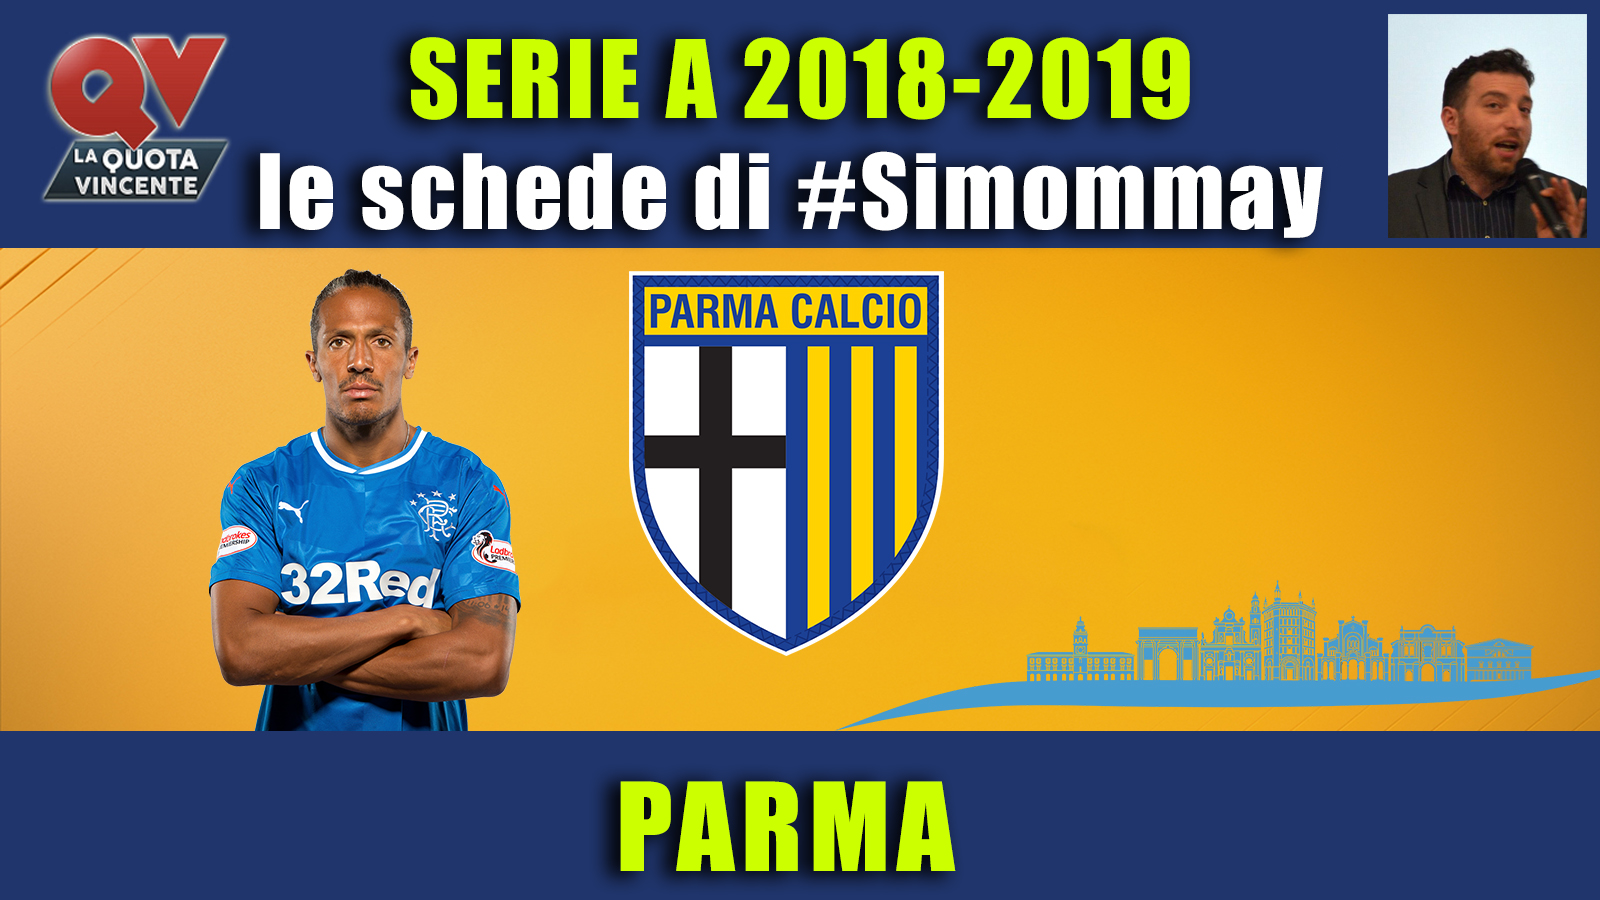 Guida Serie A 2018-2019 PARMA: la rinascita dalle ceneri dei ducali